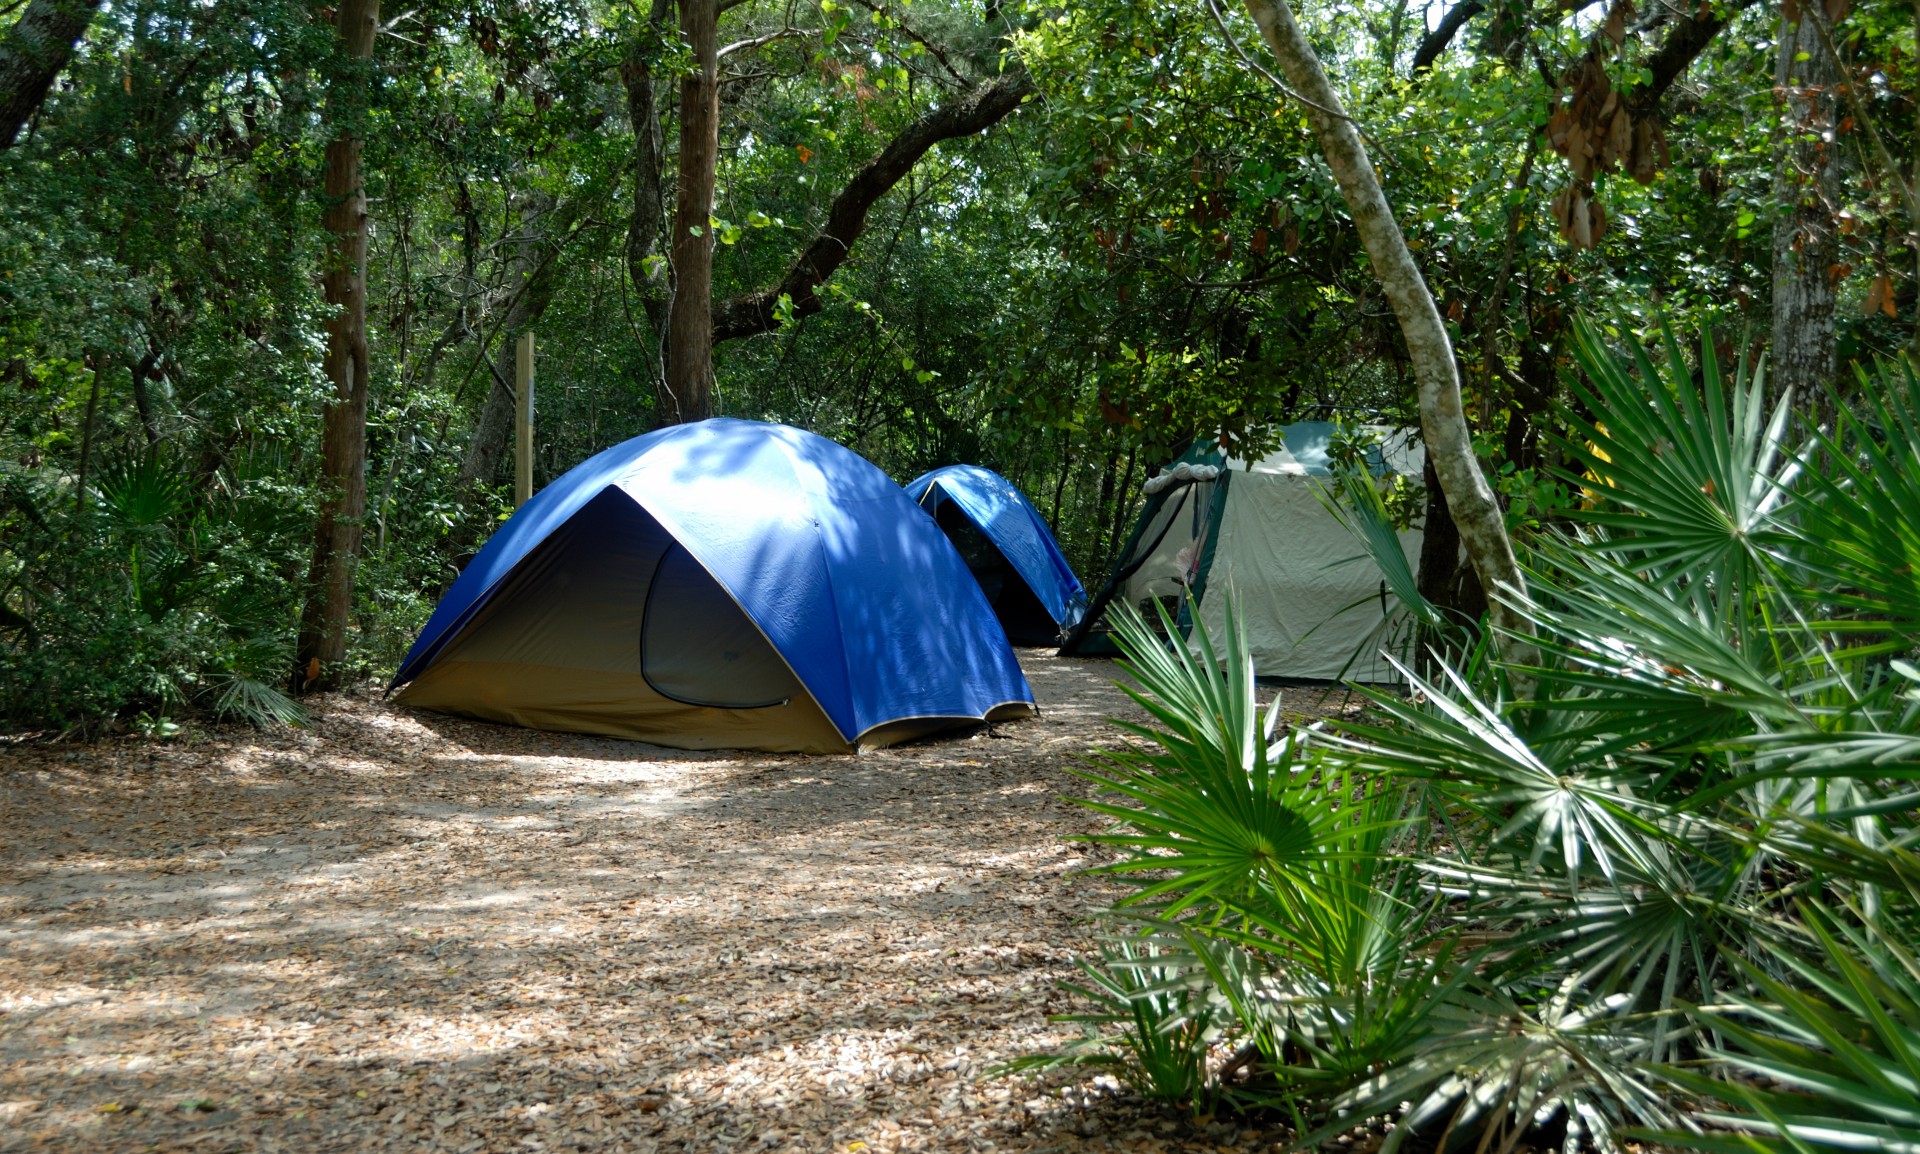 Camping tour hotelCamping price